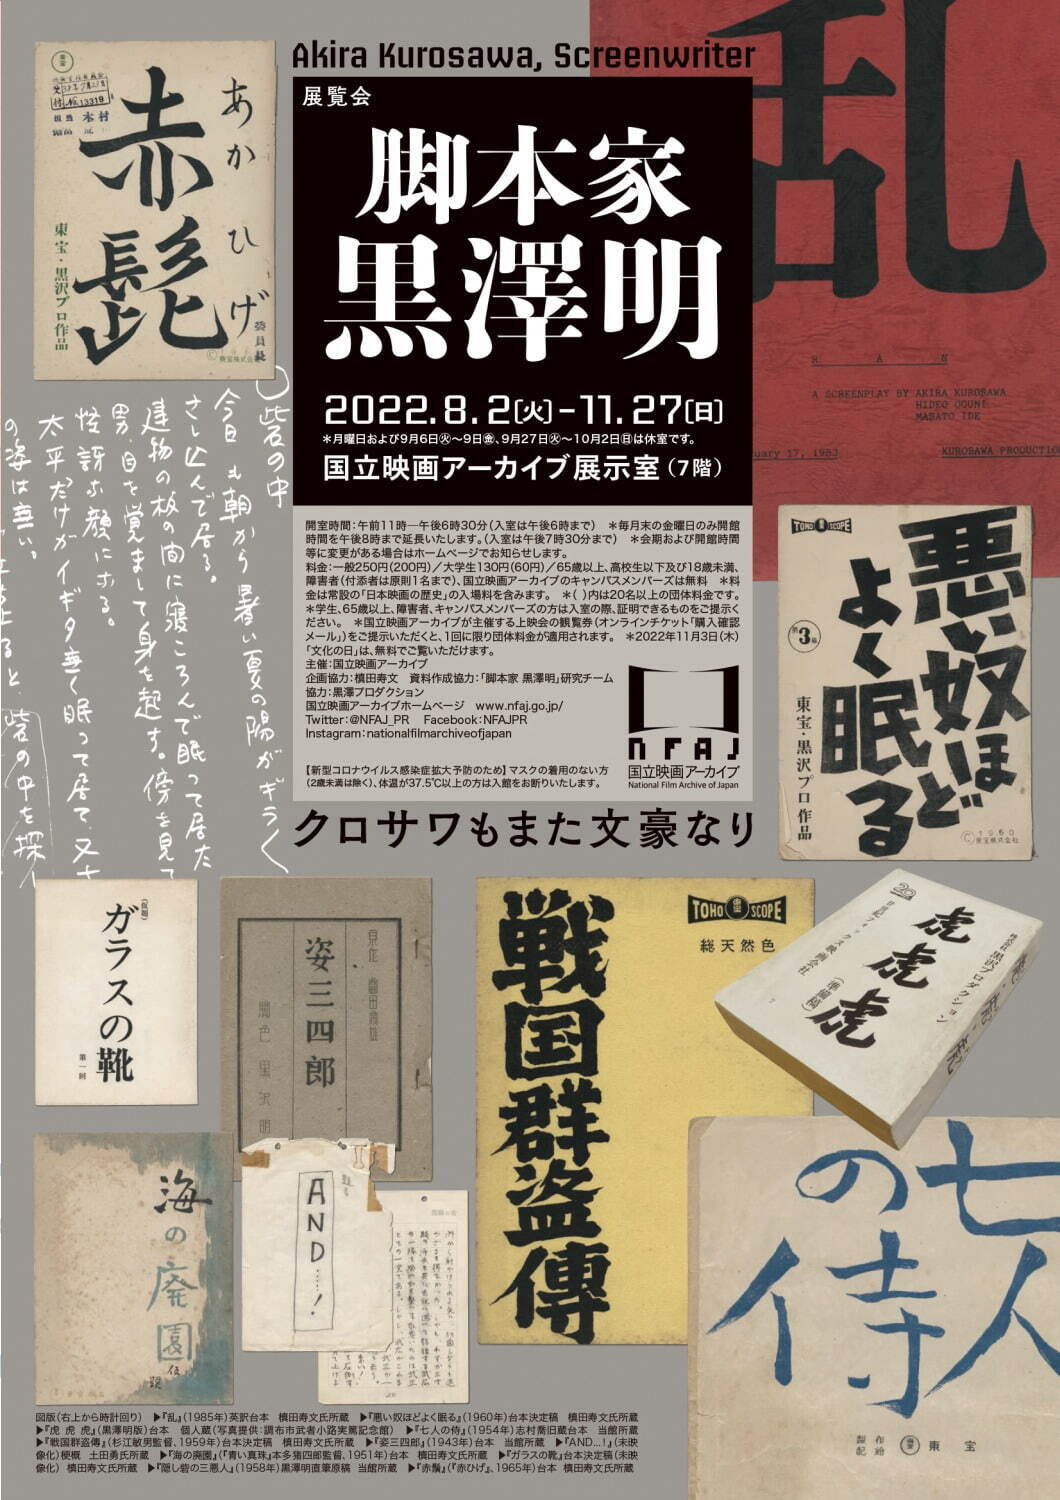 展覧会「脚本家 黒澤明」“シナリオ作家”の側面から黒澤映画の制作過程 